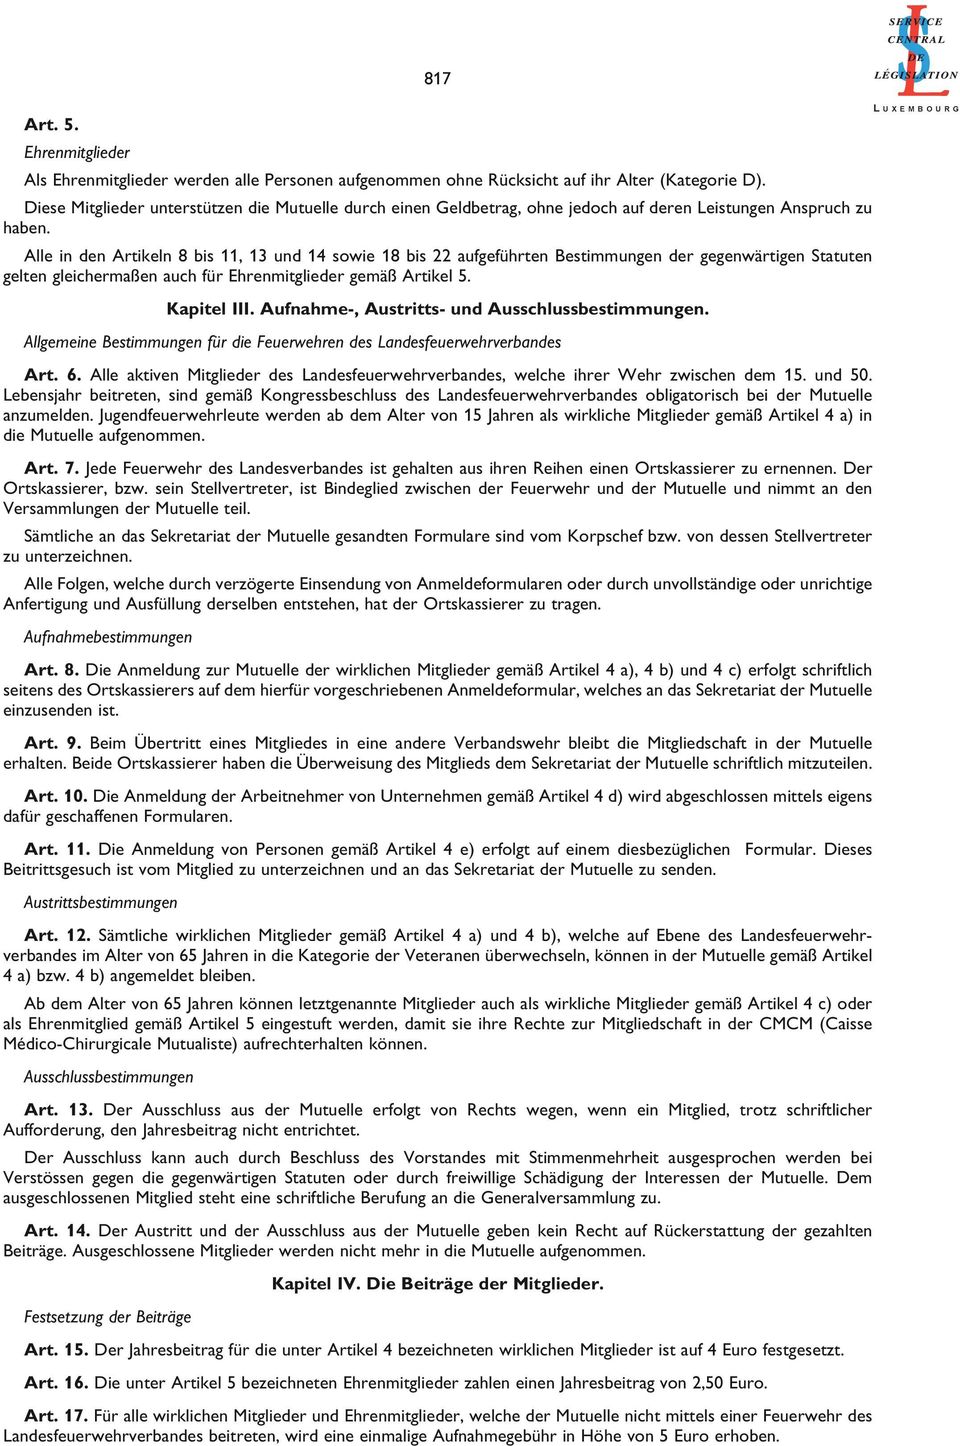 Alle in den Artikeln 8 bis 11, 13 und 14 sowie 18 bis 22 aufgeführten Bestimmungen der gegenwärtigen Statuten gelten gleichermaßen auch für Ehrenmitglieder gemäß Artikel 5. Kapitel III.